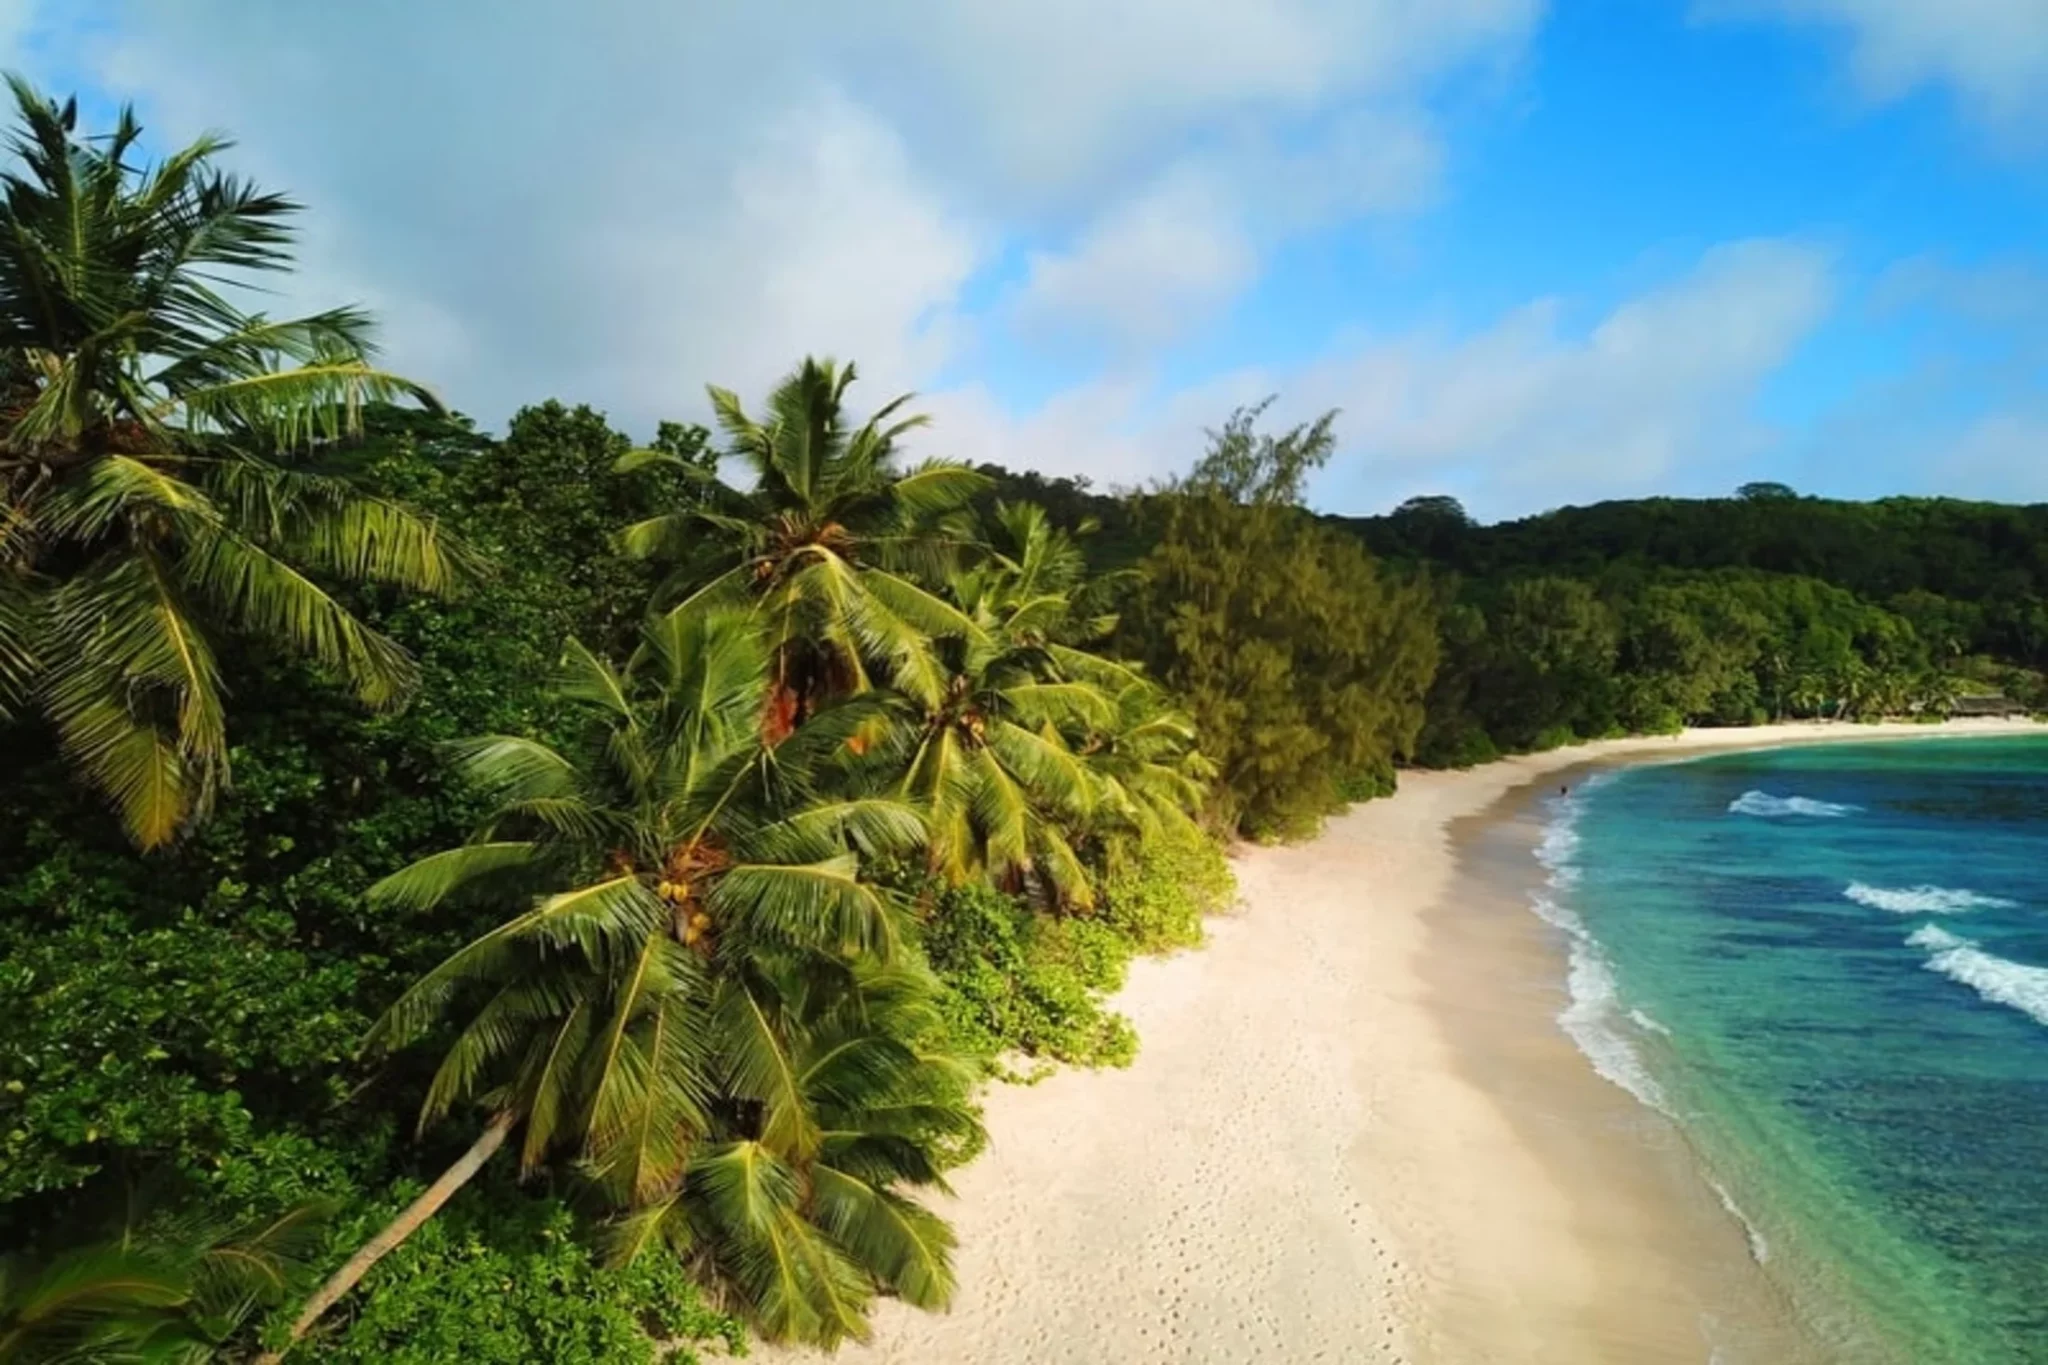 A peaceful Seychelles beach on a sunny day.